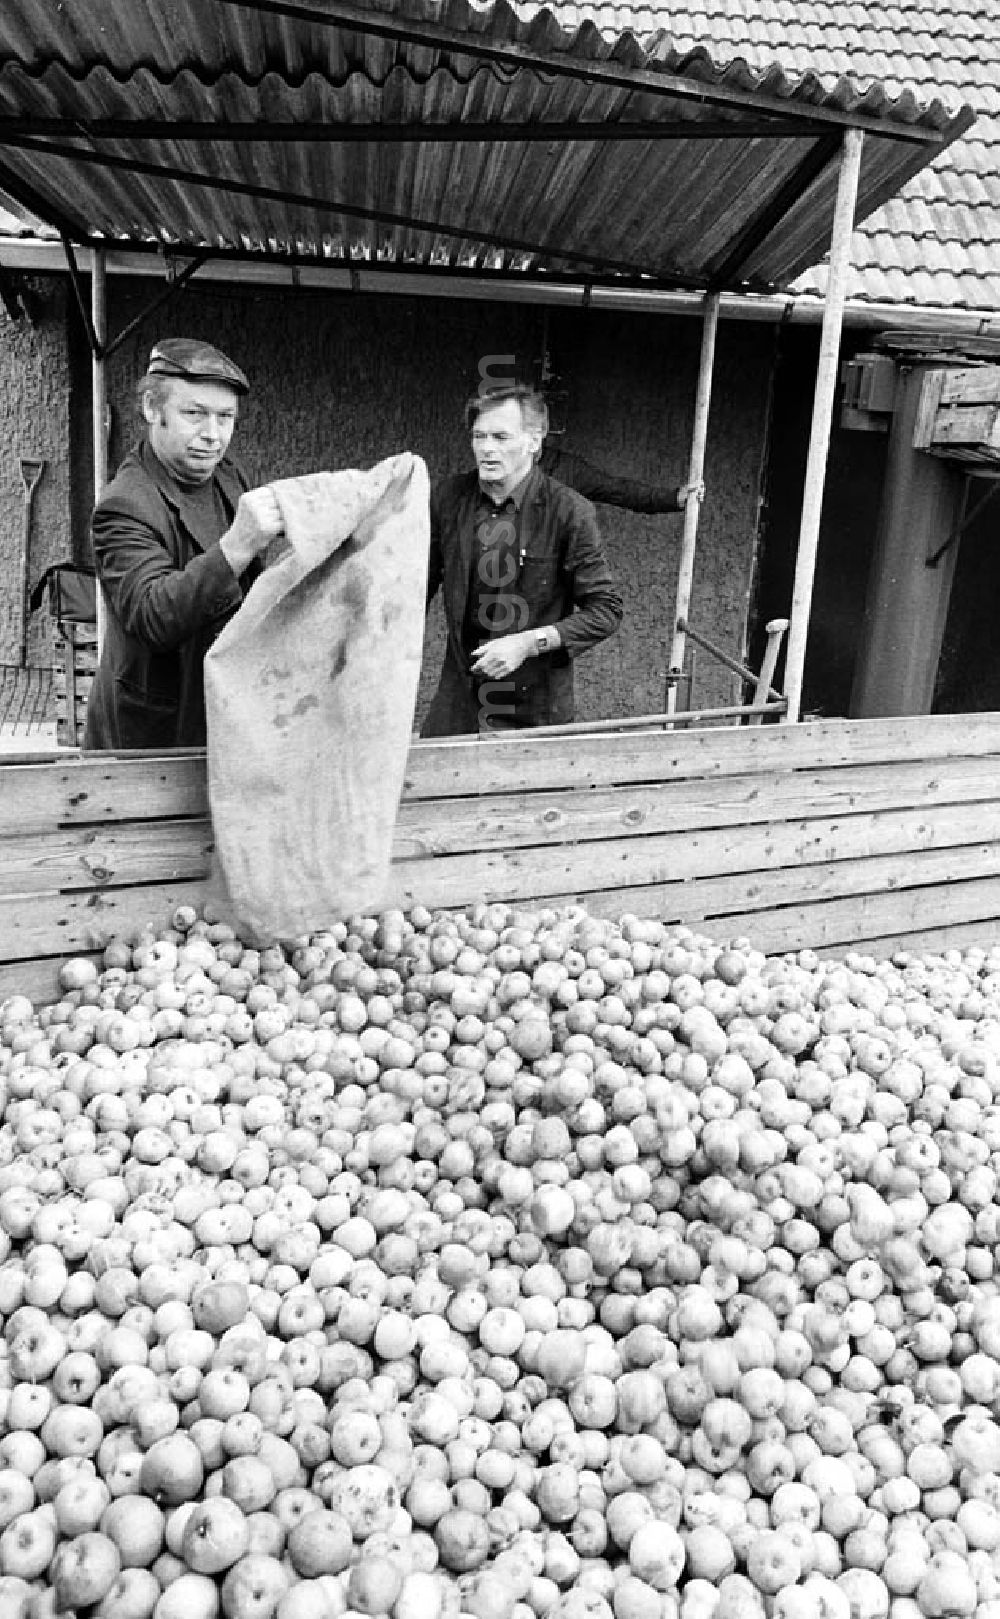 GDR photo archive: Hohen Neuendorf - Produktion in der Mosterei der Bäuerlichen Handelsgesellschaft / BHG in Hohen Neuendorf (Brandenburg). Äpfel liegen vor der Mosterei auf Sammelstelle, Arbeiter leert Sack mit Äpfeln darüber.